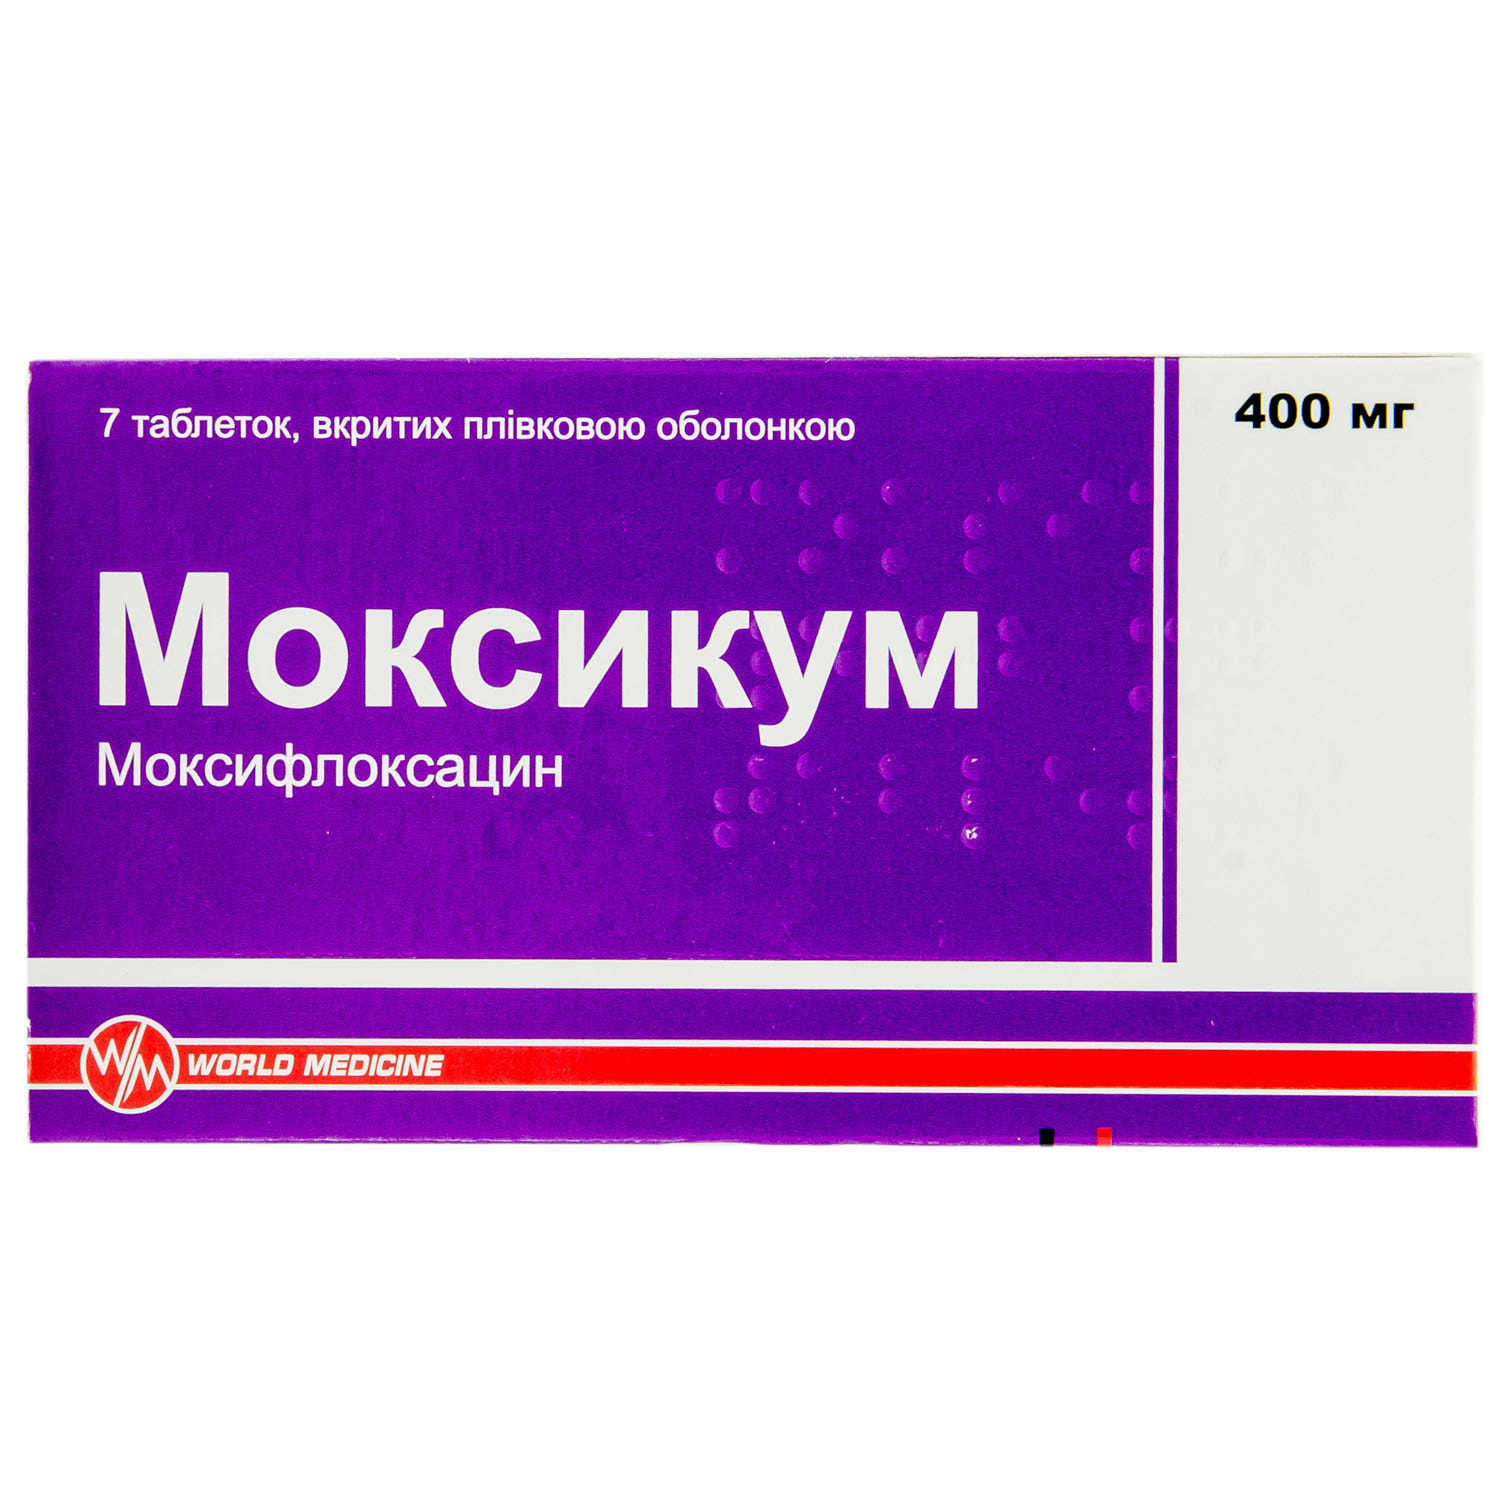 Моксикум 400 мг аналоги